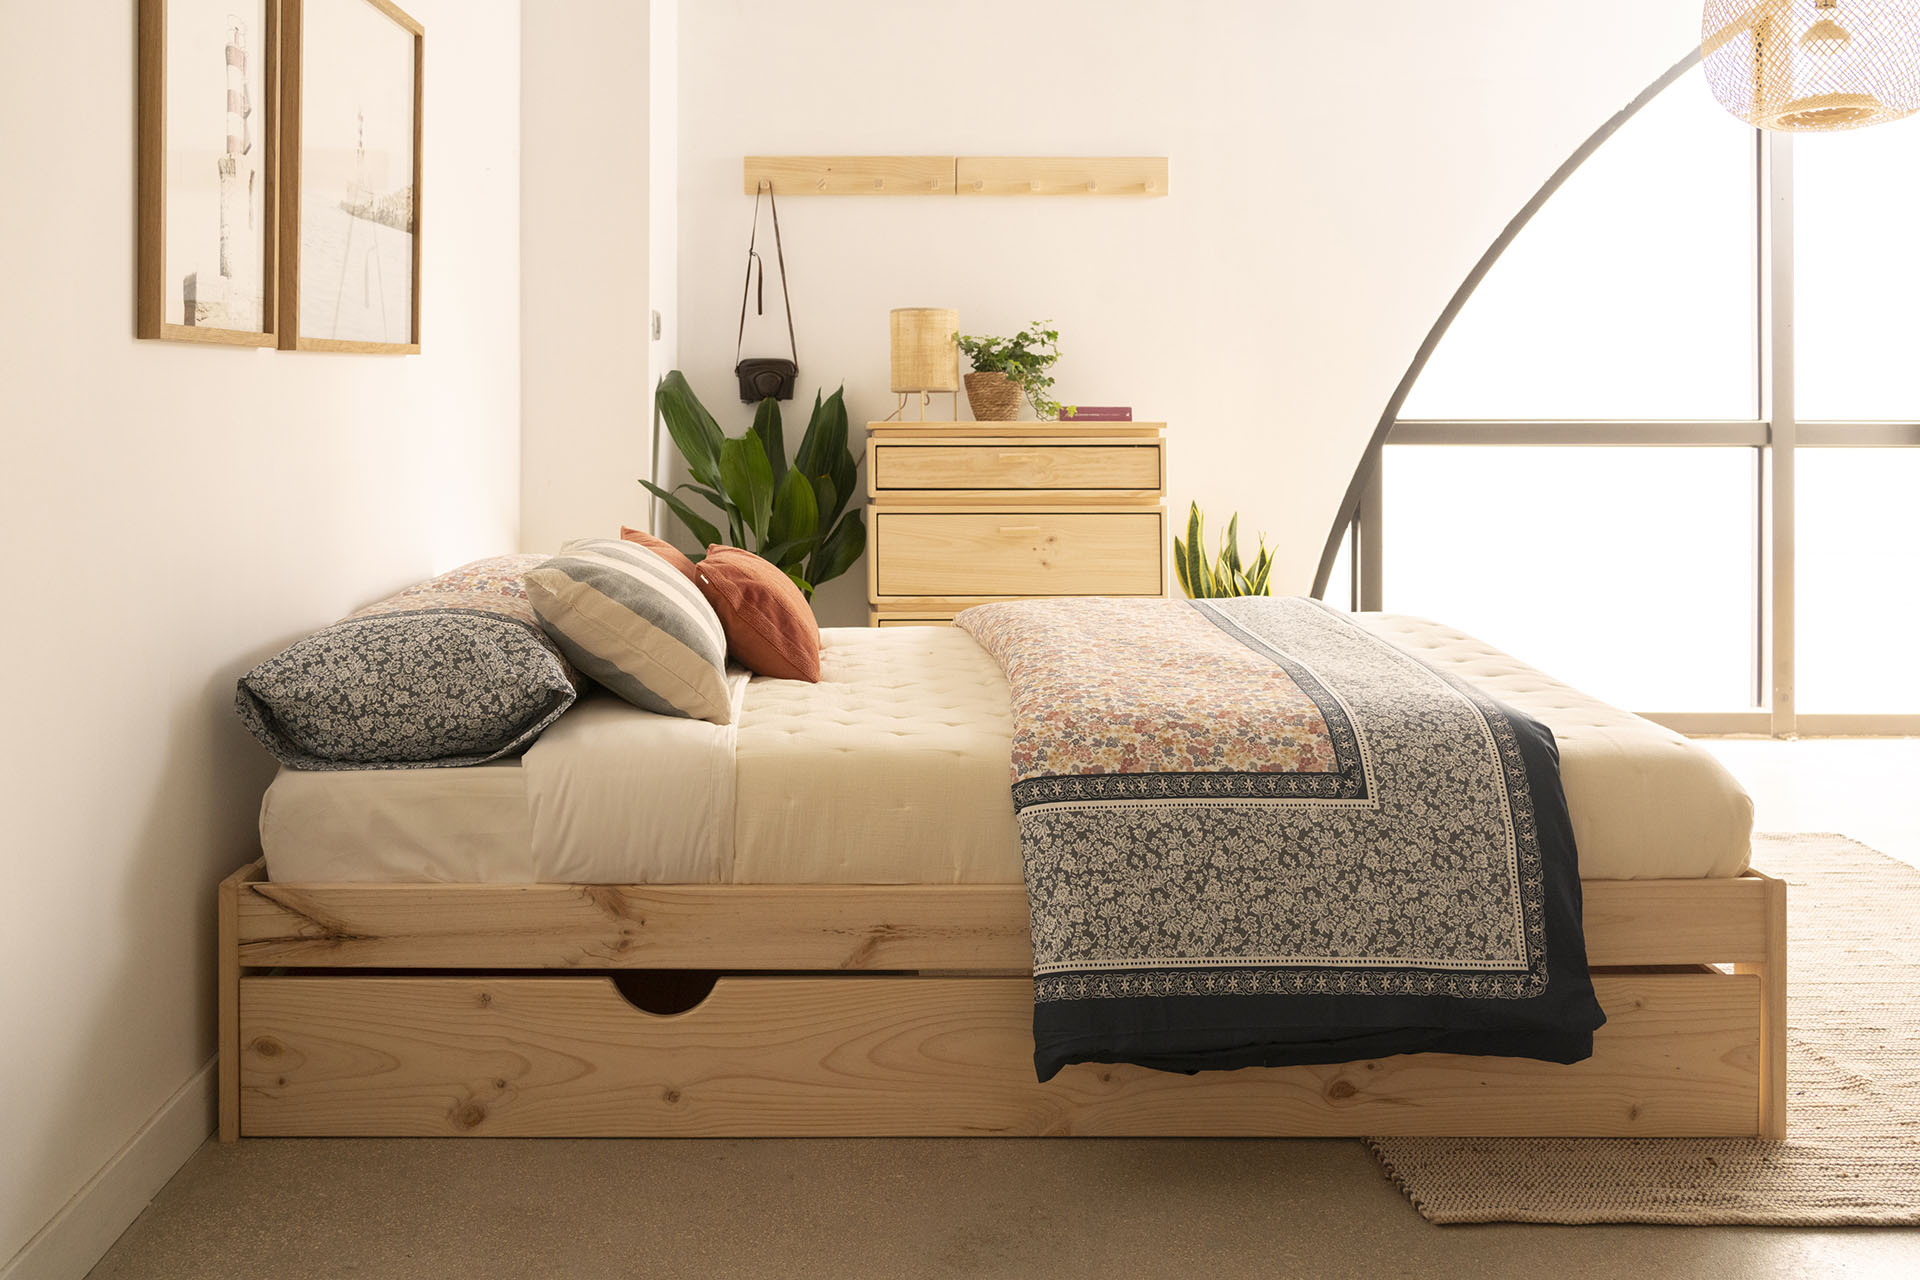 El sendero Adaptar prioridad Reinventamos nuestras camas con almacenaje | Muebles LUFE